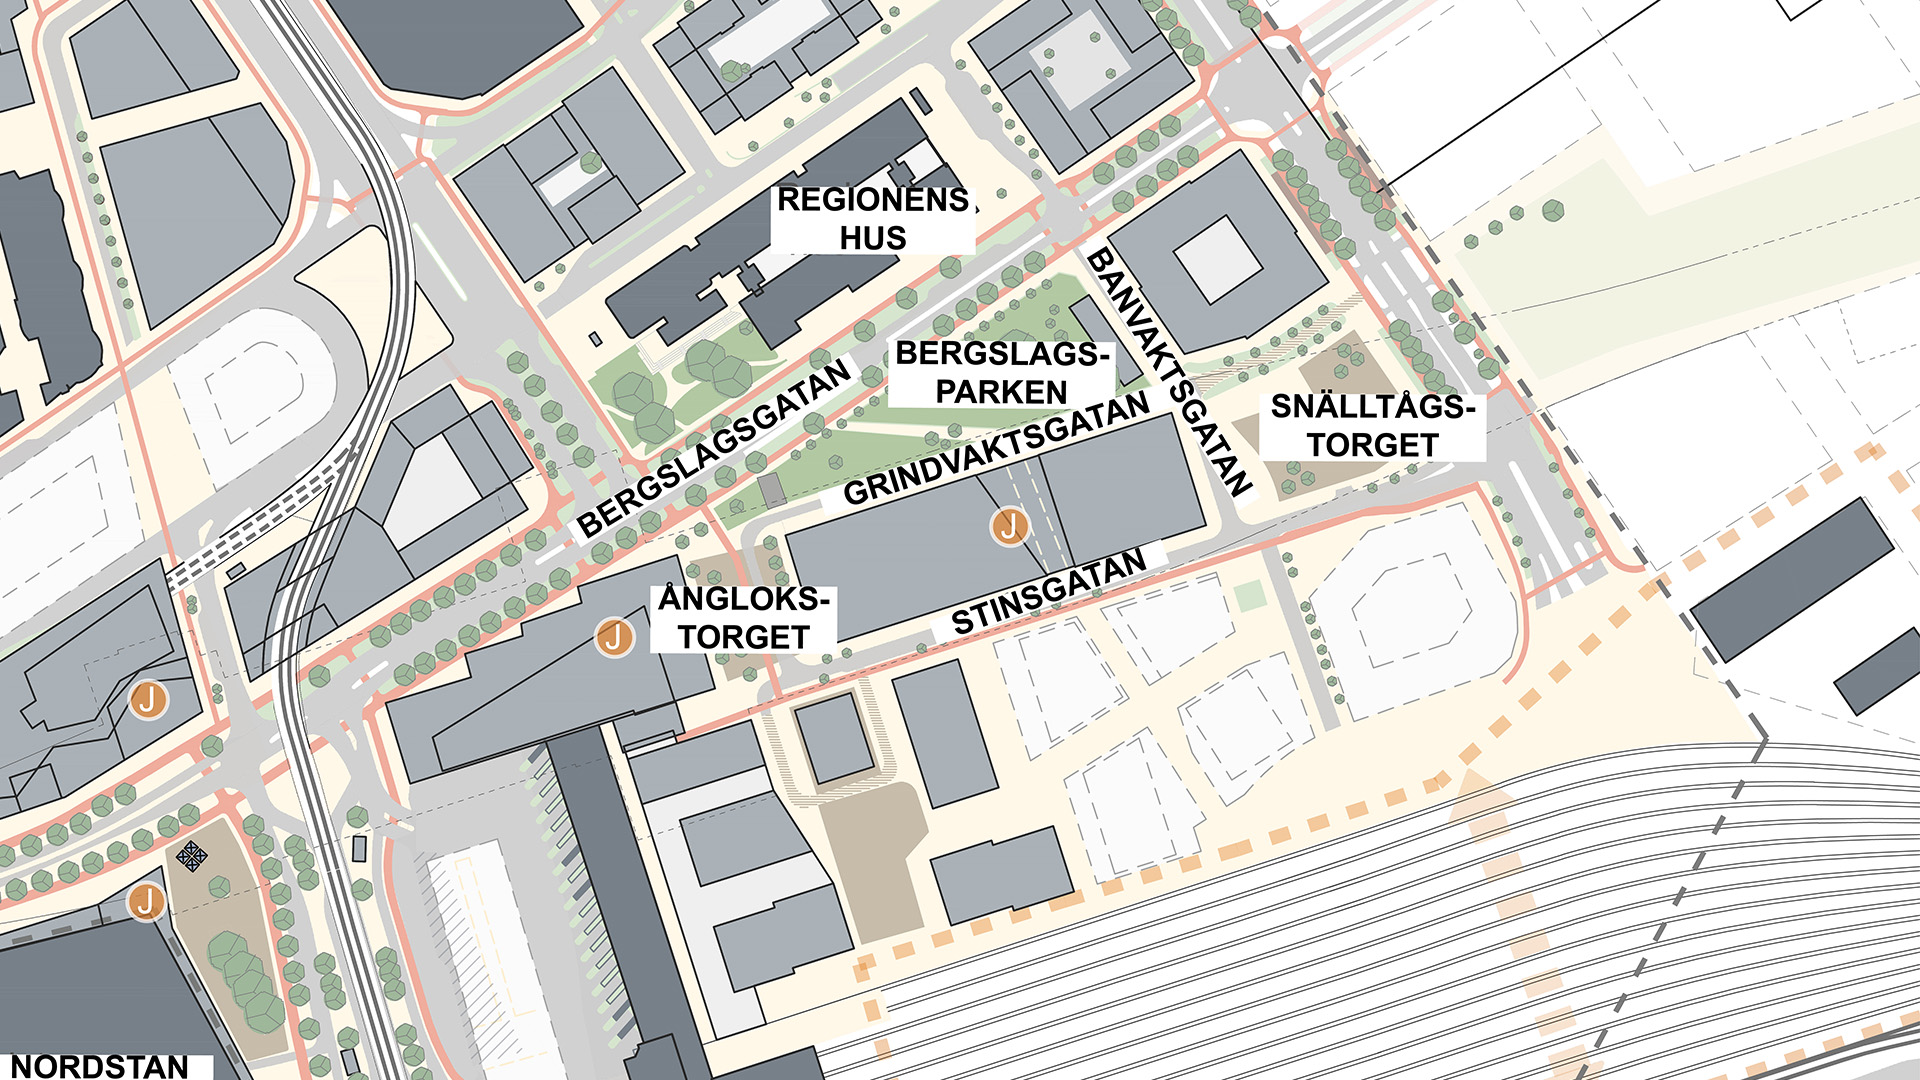 Illustrationskarta över två nya parker i centralenområdet, Stinstorget och Ånglokstorget